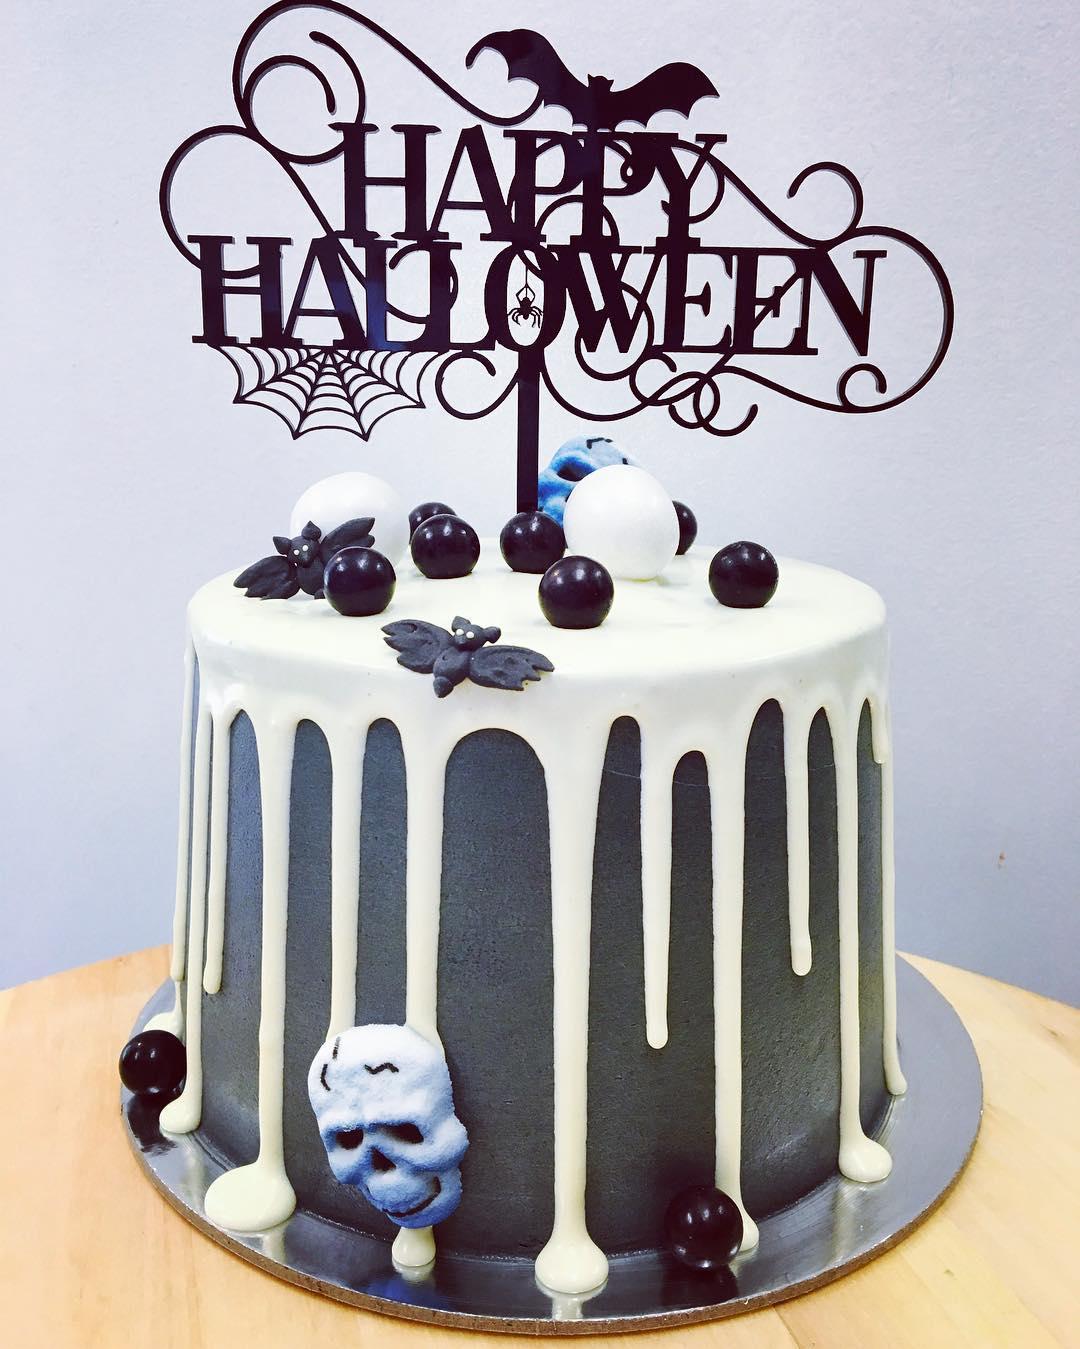 50 Gateaux Malefiques D Halloween Reperes Sur Instagram Cuisine Madame Figaro